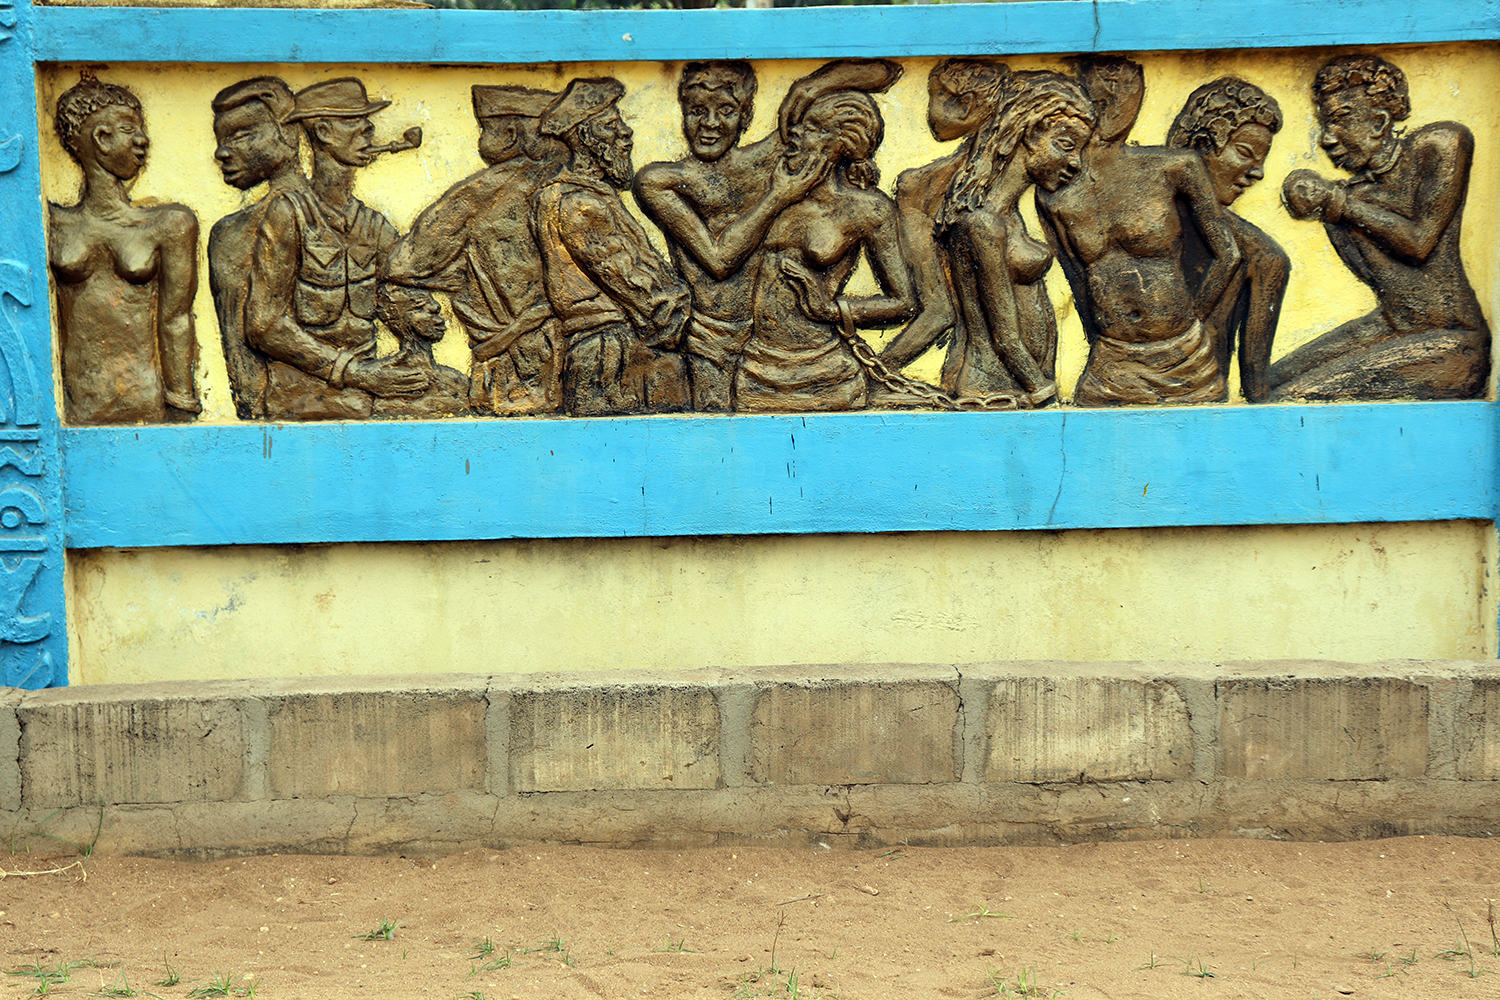 À Ouidah ces personnes étaient vendues aux négriers européens qui les revendaient en Amérique. 